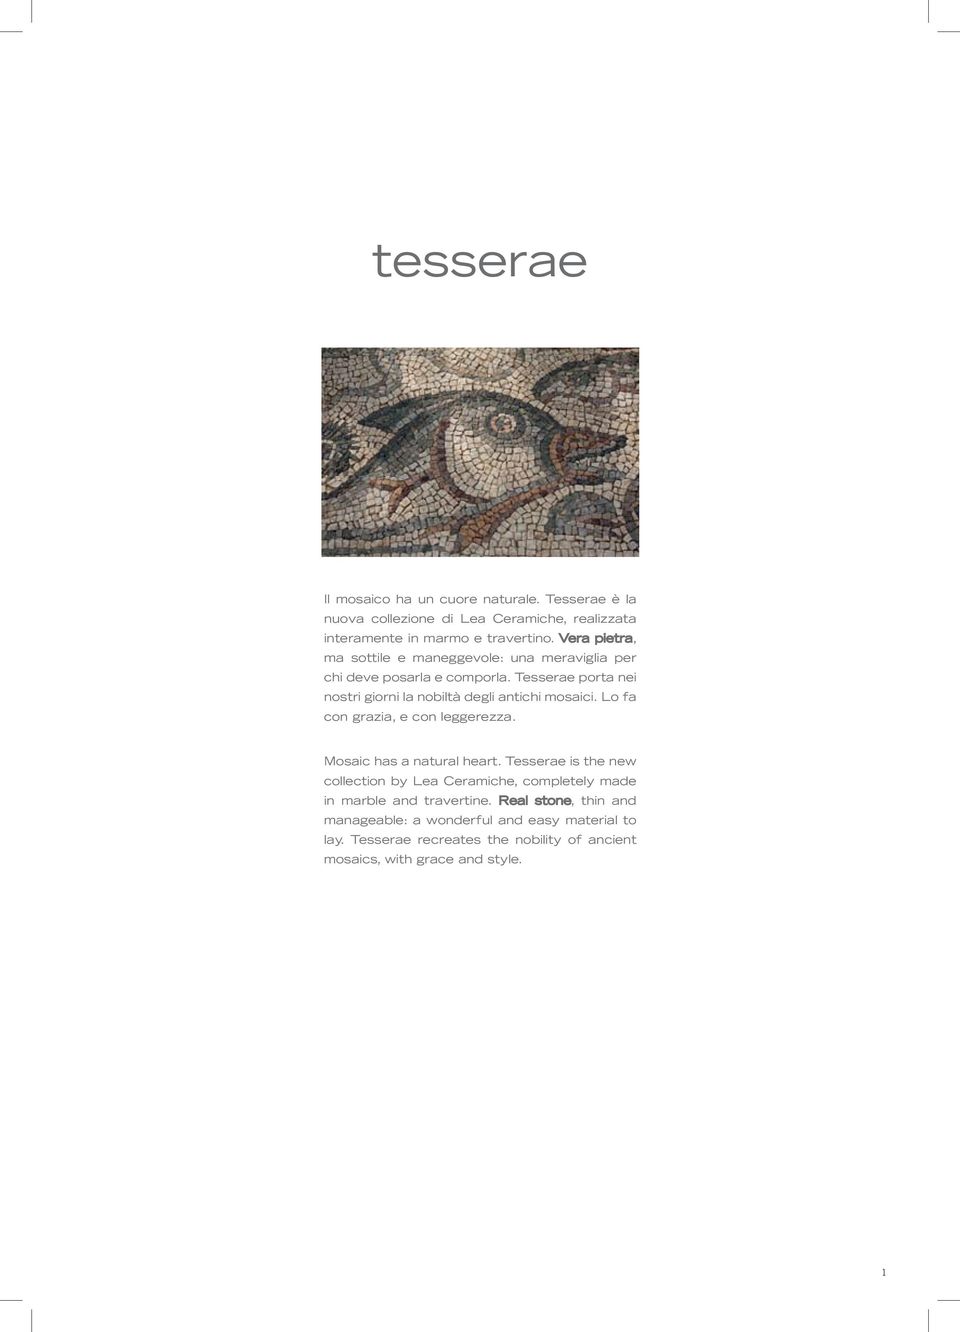 Tesserae porta nei nostri giorni la nobiltà degli antichi mosaici. Lo fa con grazia, e con leggerezza. Mosaic has a natural heart.